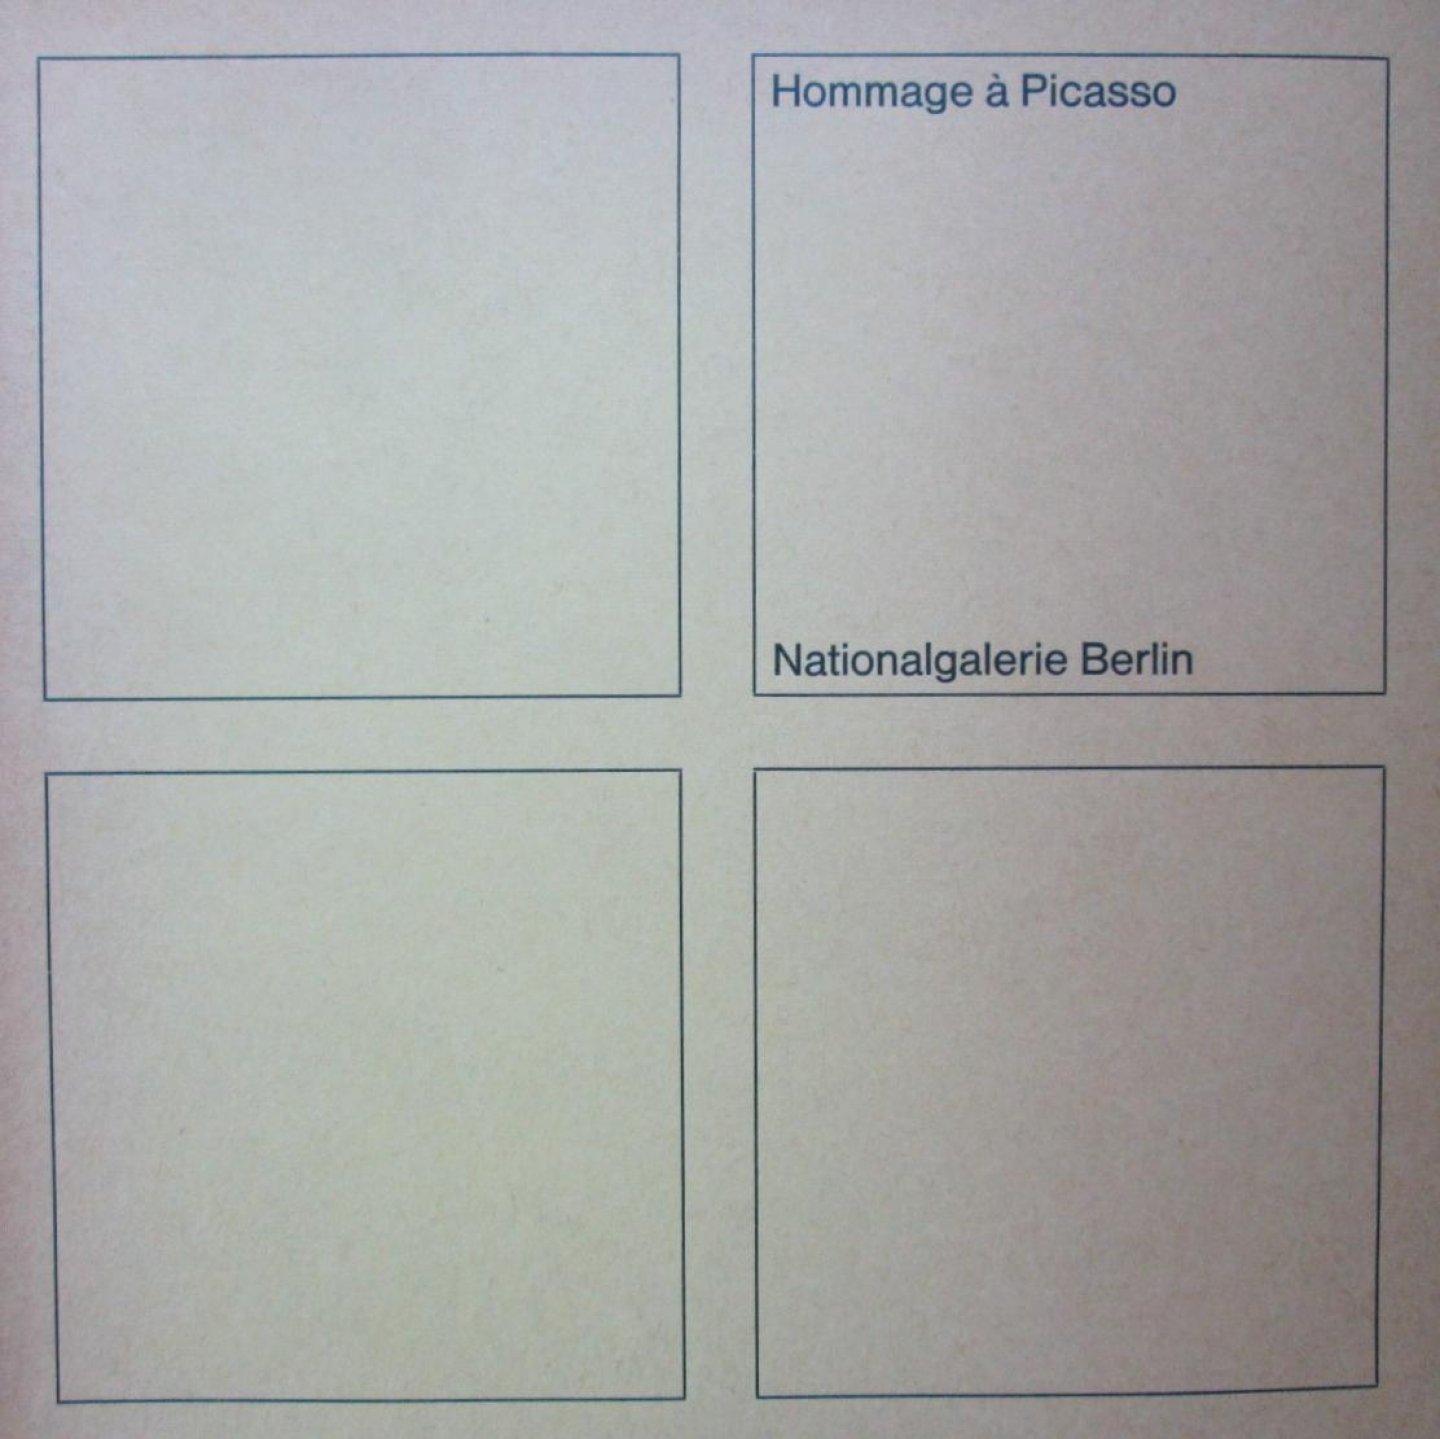 Werner Haftmann, - Hommage à Picasso. Katalog der Ausstellung in der Nationalgalerie Berlin 1973. Eingeleitet von Werner Haftmann und Wieland Schmied. Mit vielen Abbildungen.